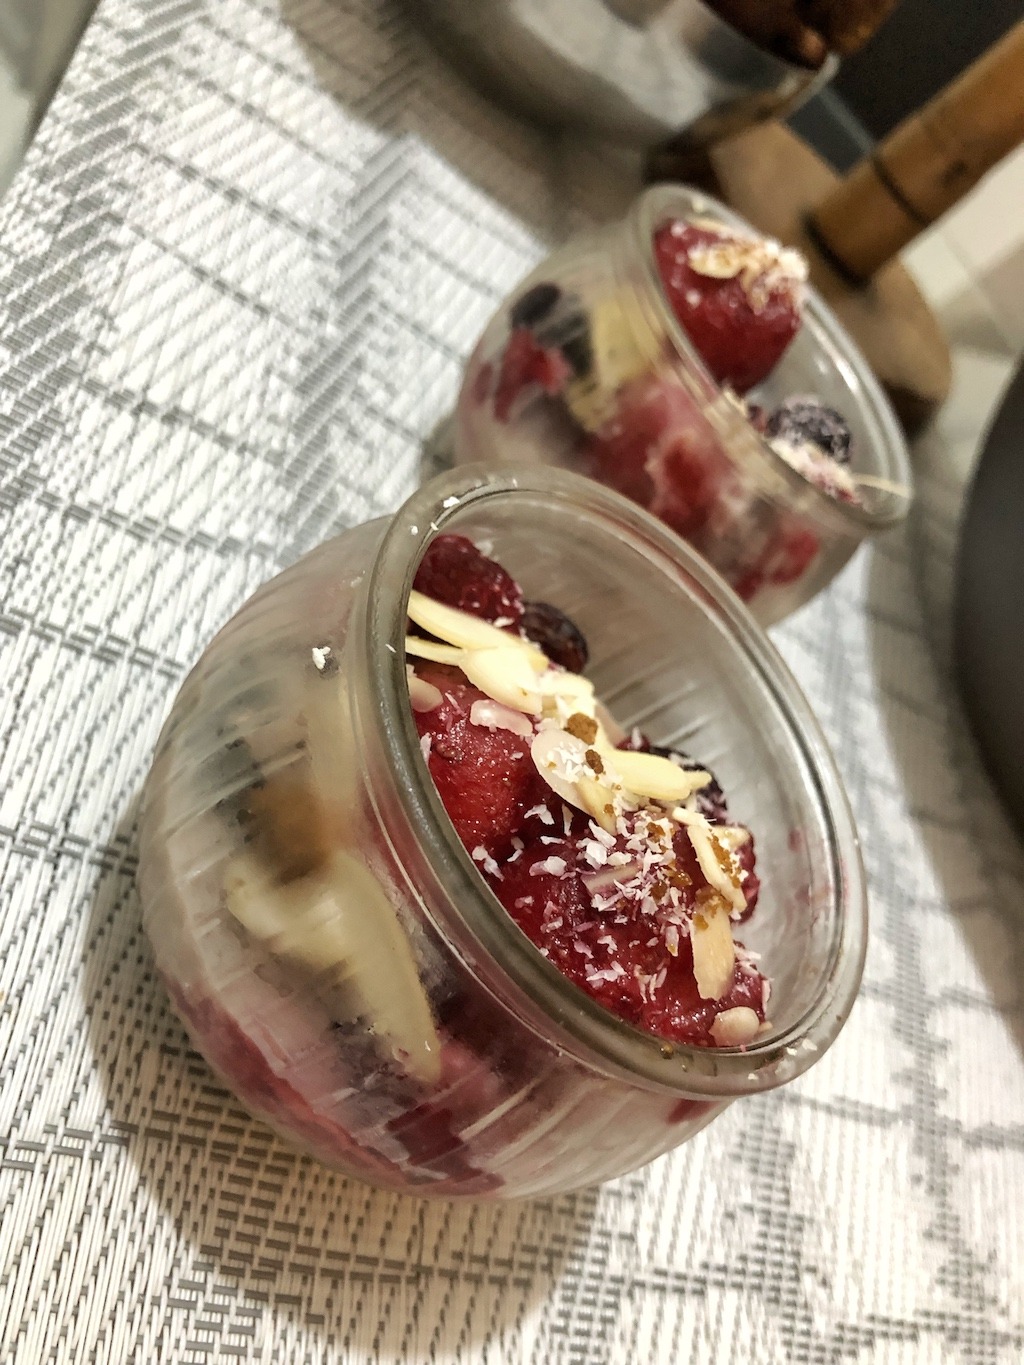 Coconut Berries Ice Cream Jars - Healthy Keto Low Carb No Sugar Dessert Original